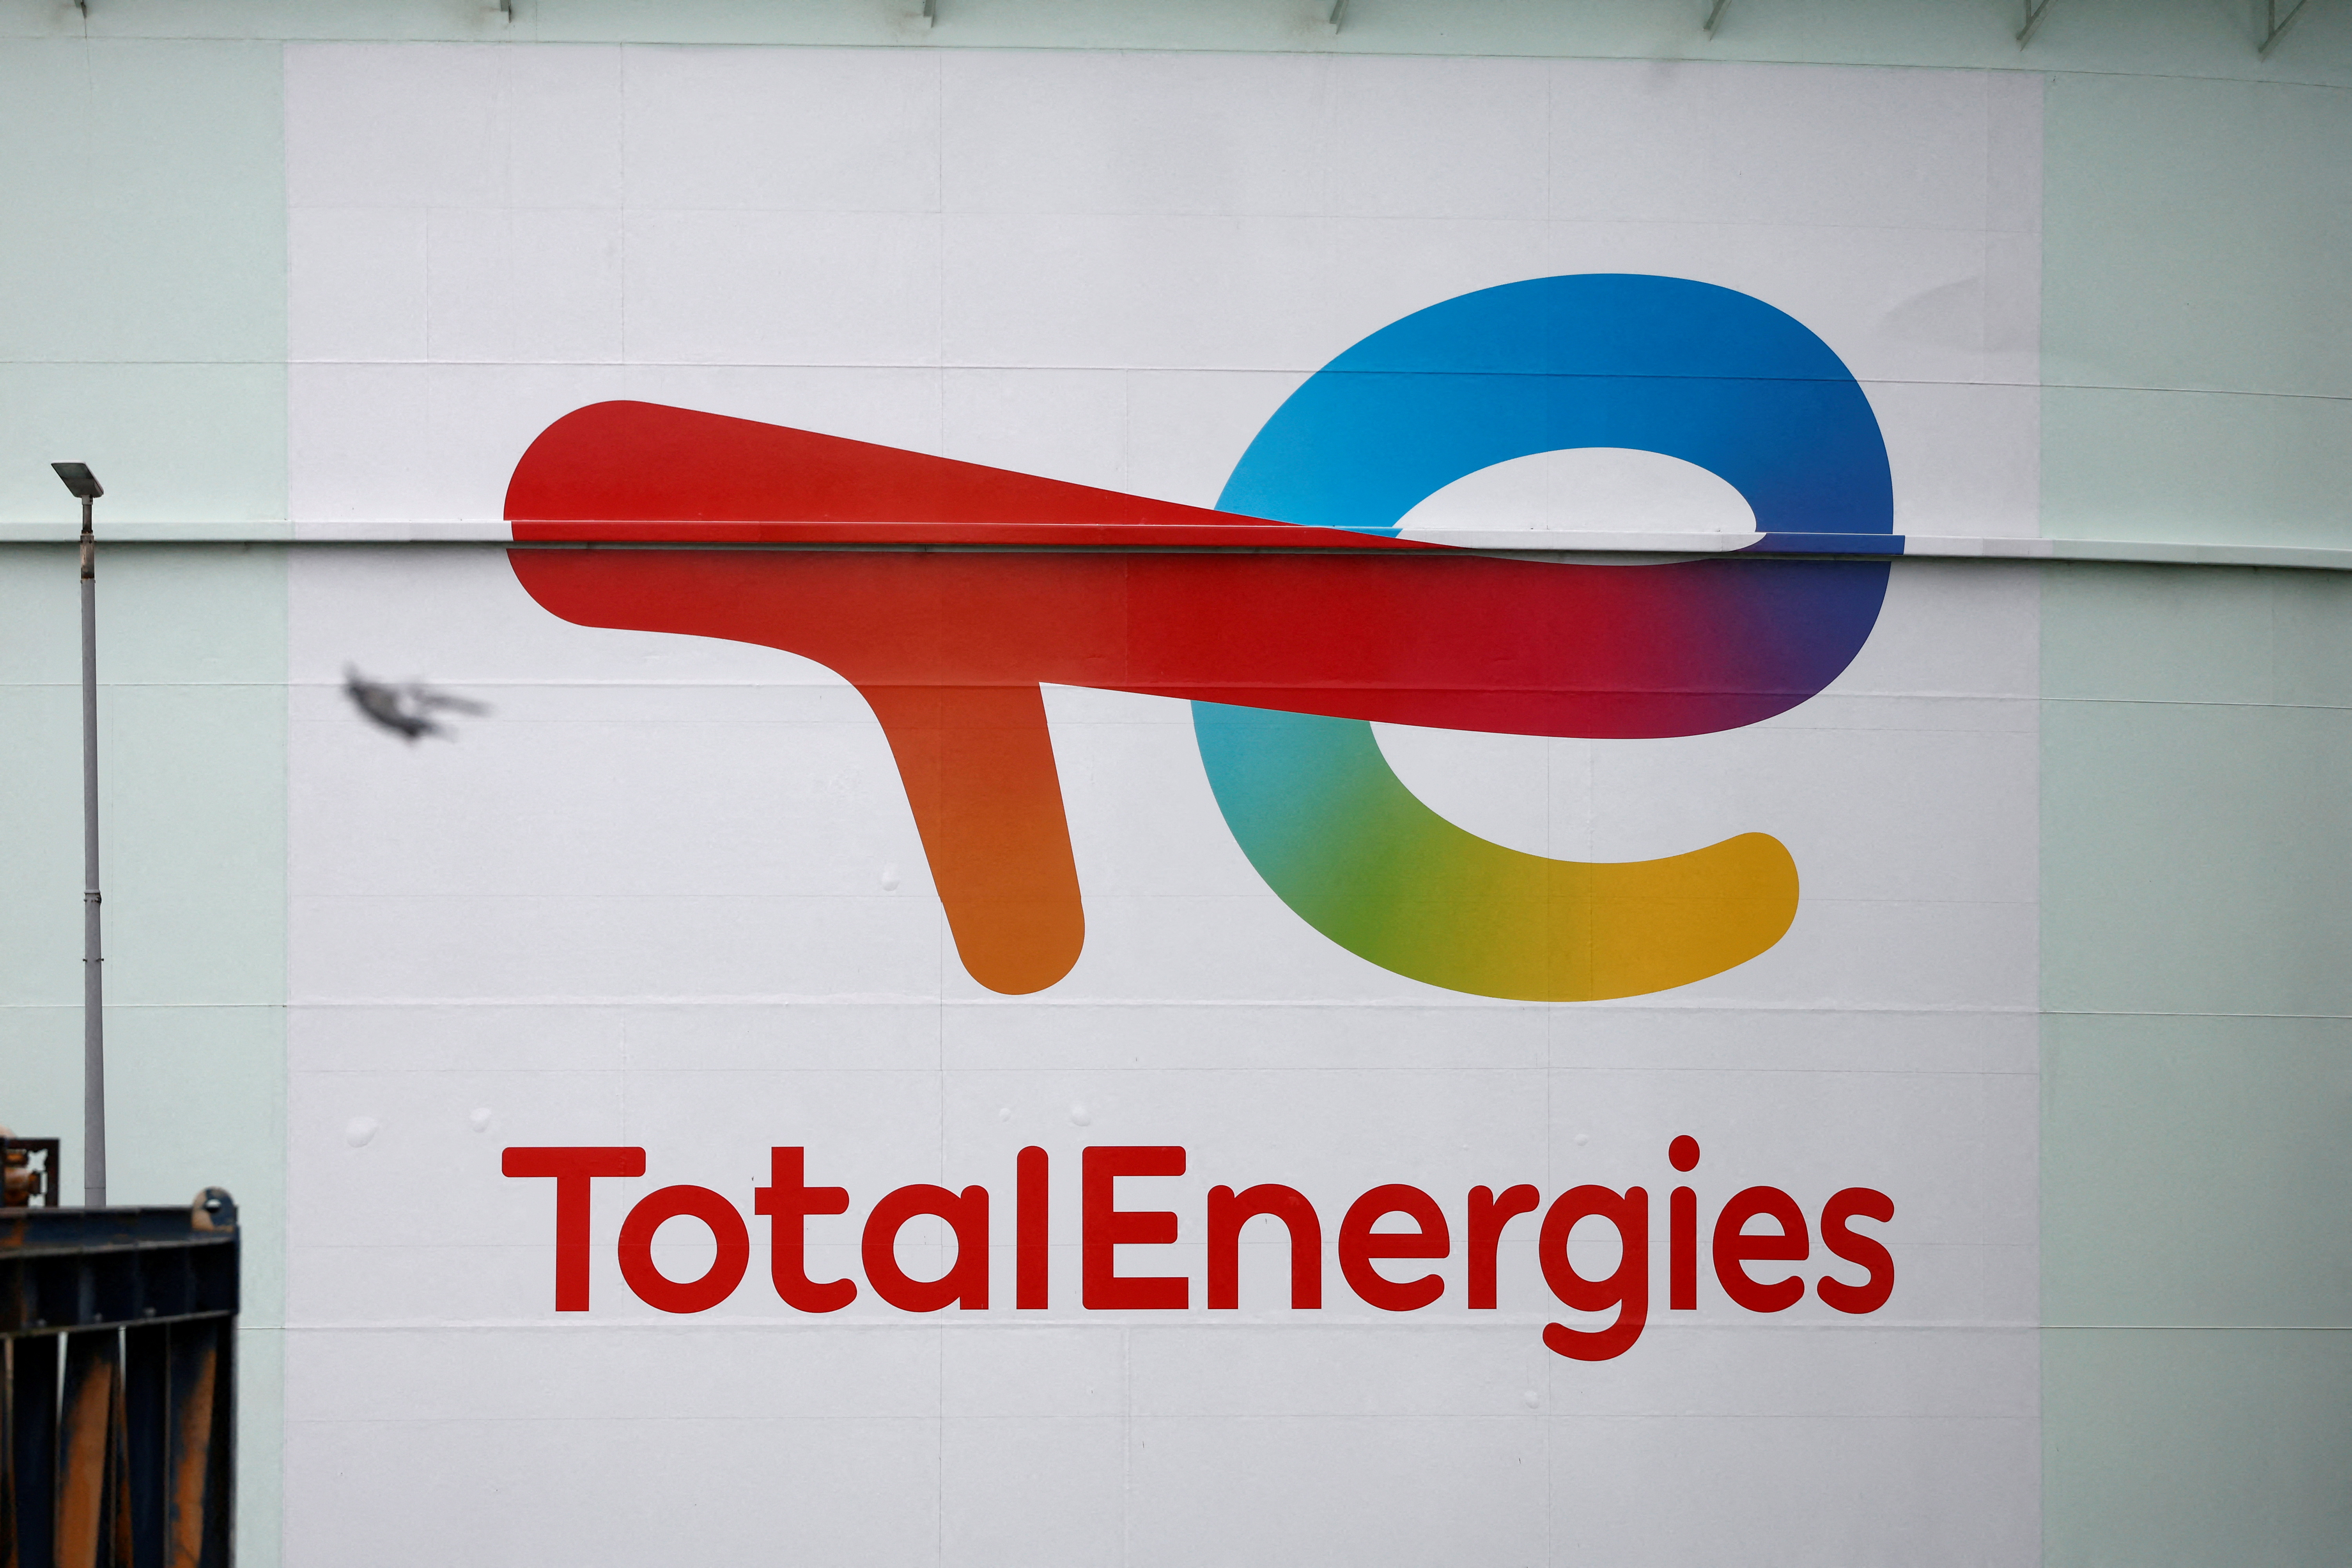 Carburants : TotalEnergies répond à l'appel du gouvernement et annonce plafonner les prix « tant qu'ils resteront élevés »